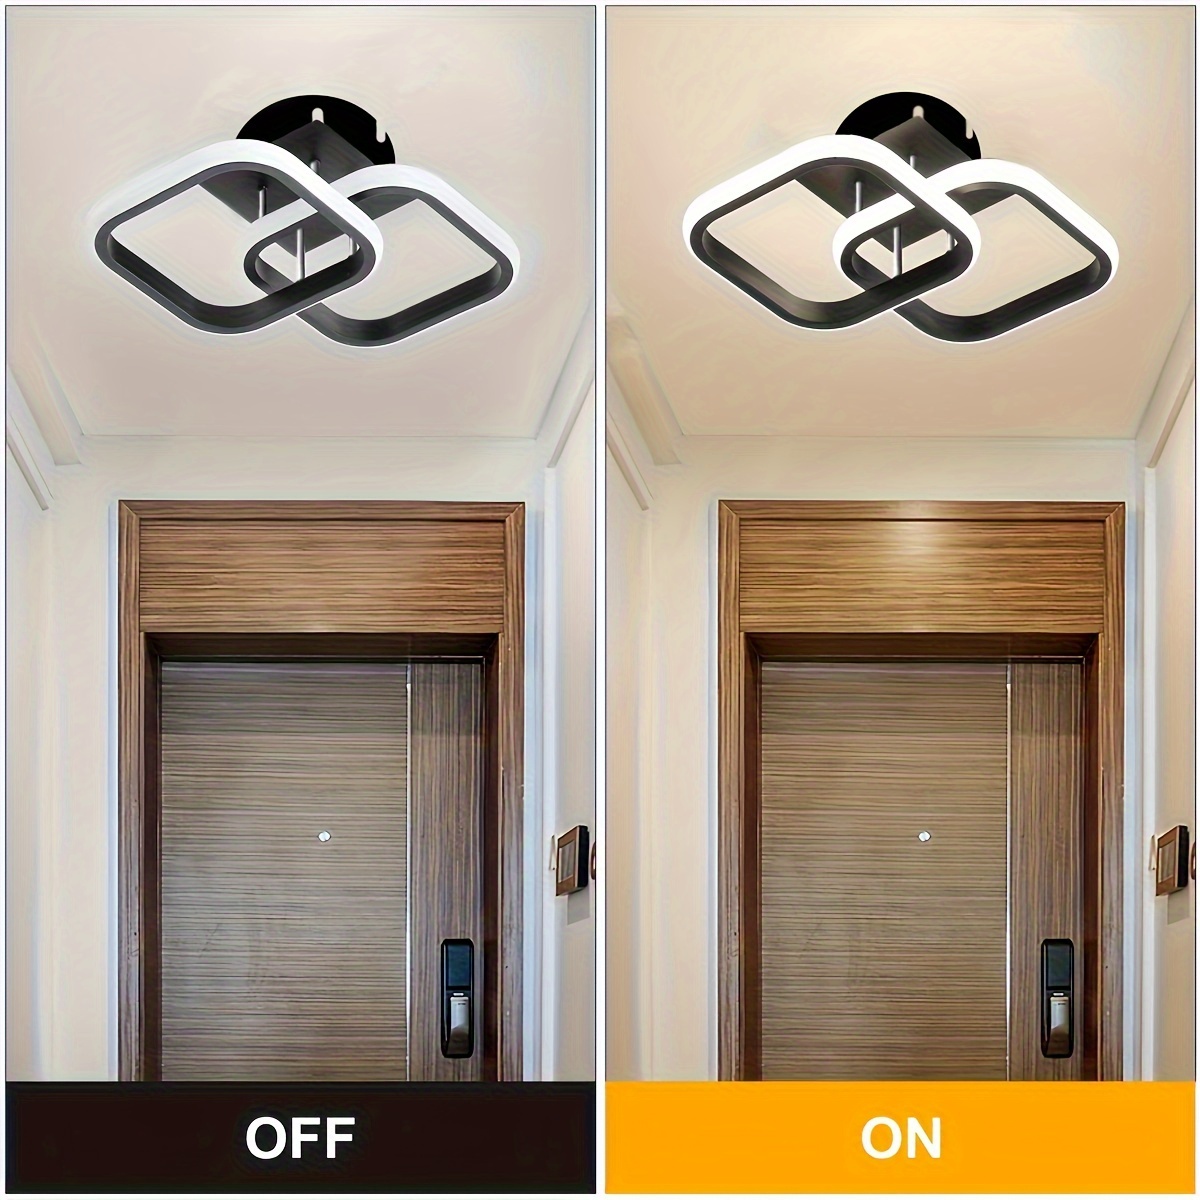 Acheter 35/55W Plafonniers LED Modernes pour Cuisine Couloir Couloir de  Nuit Balcon Entrée Rond Carré Simple Plafonnier pour la Maison